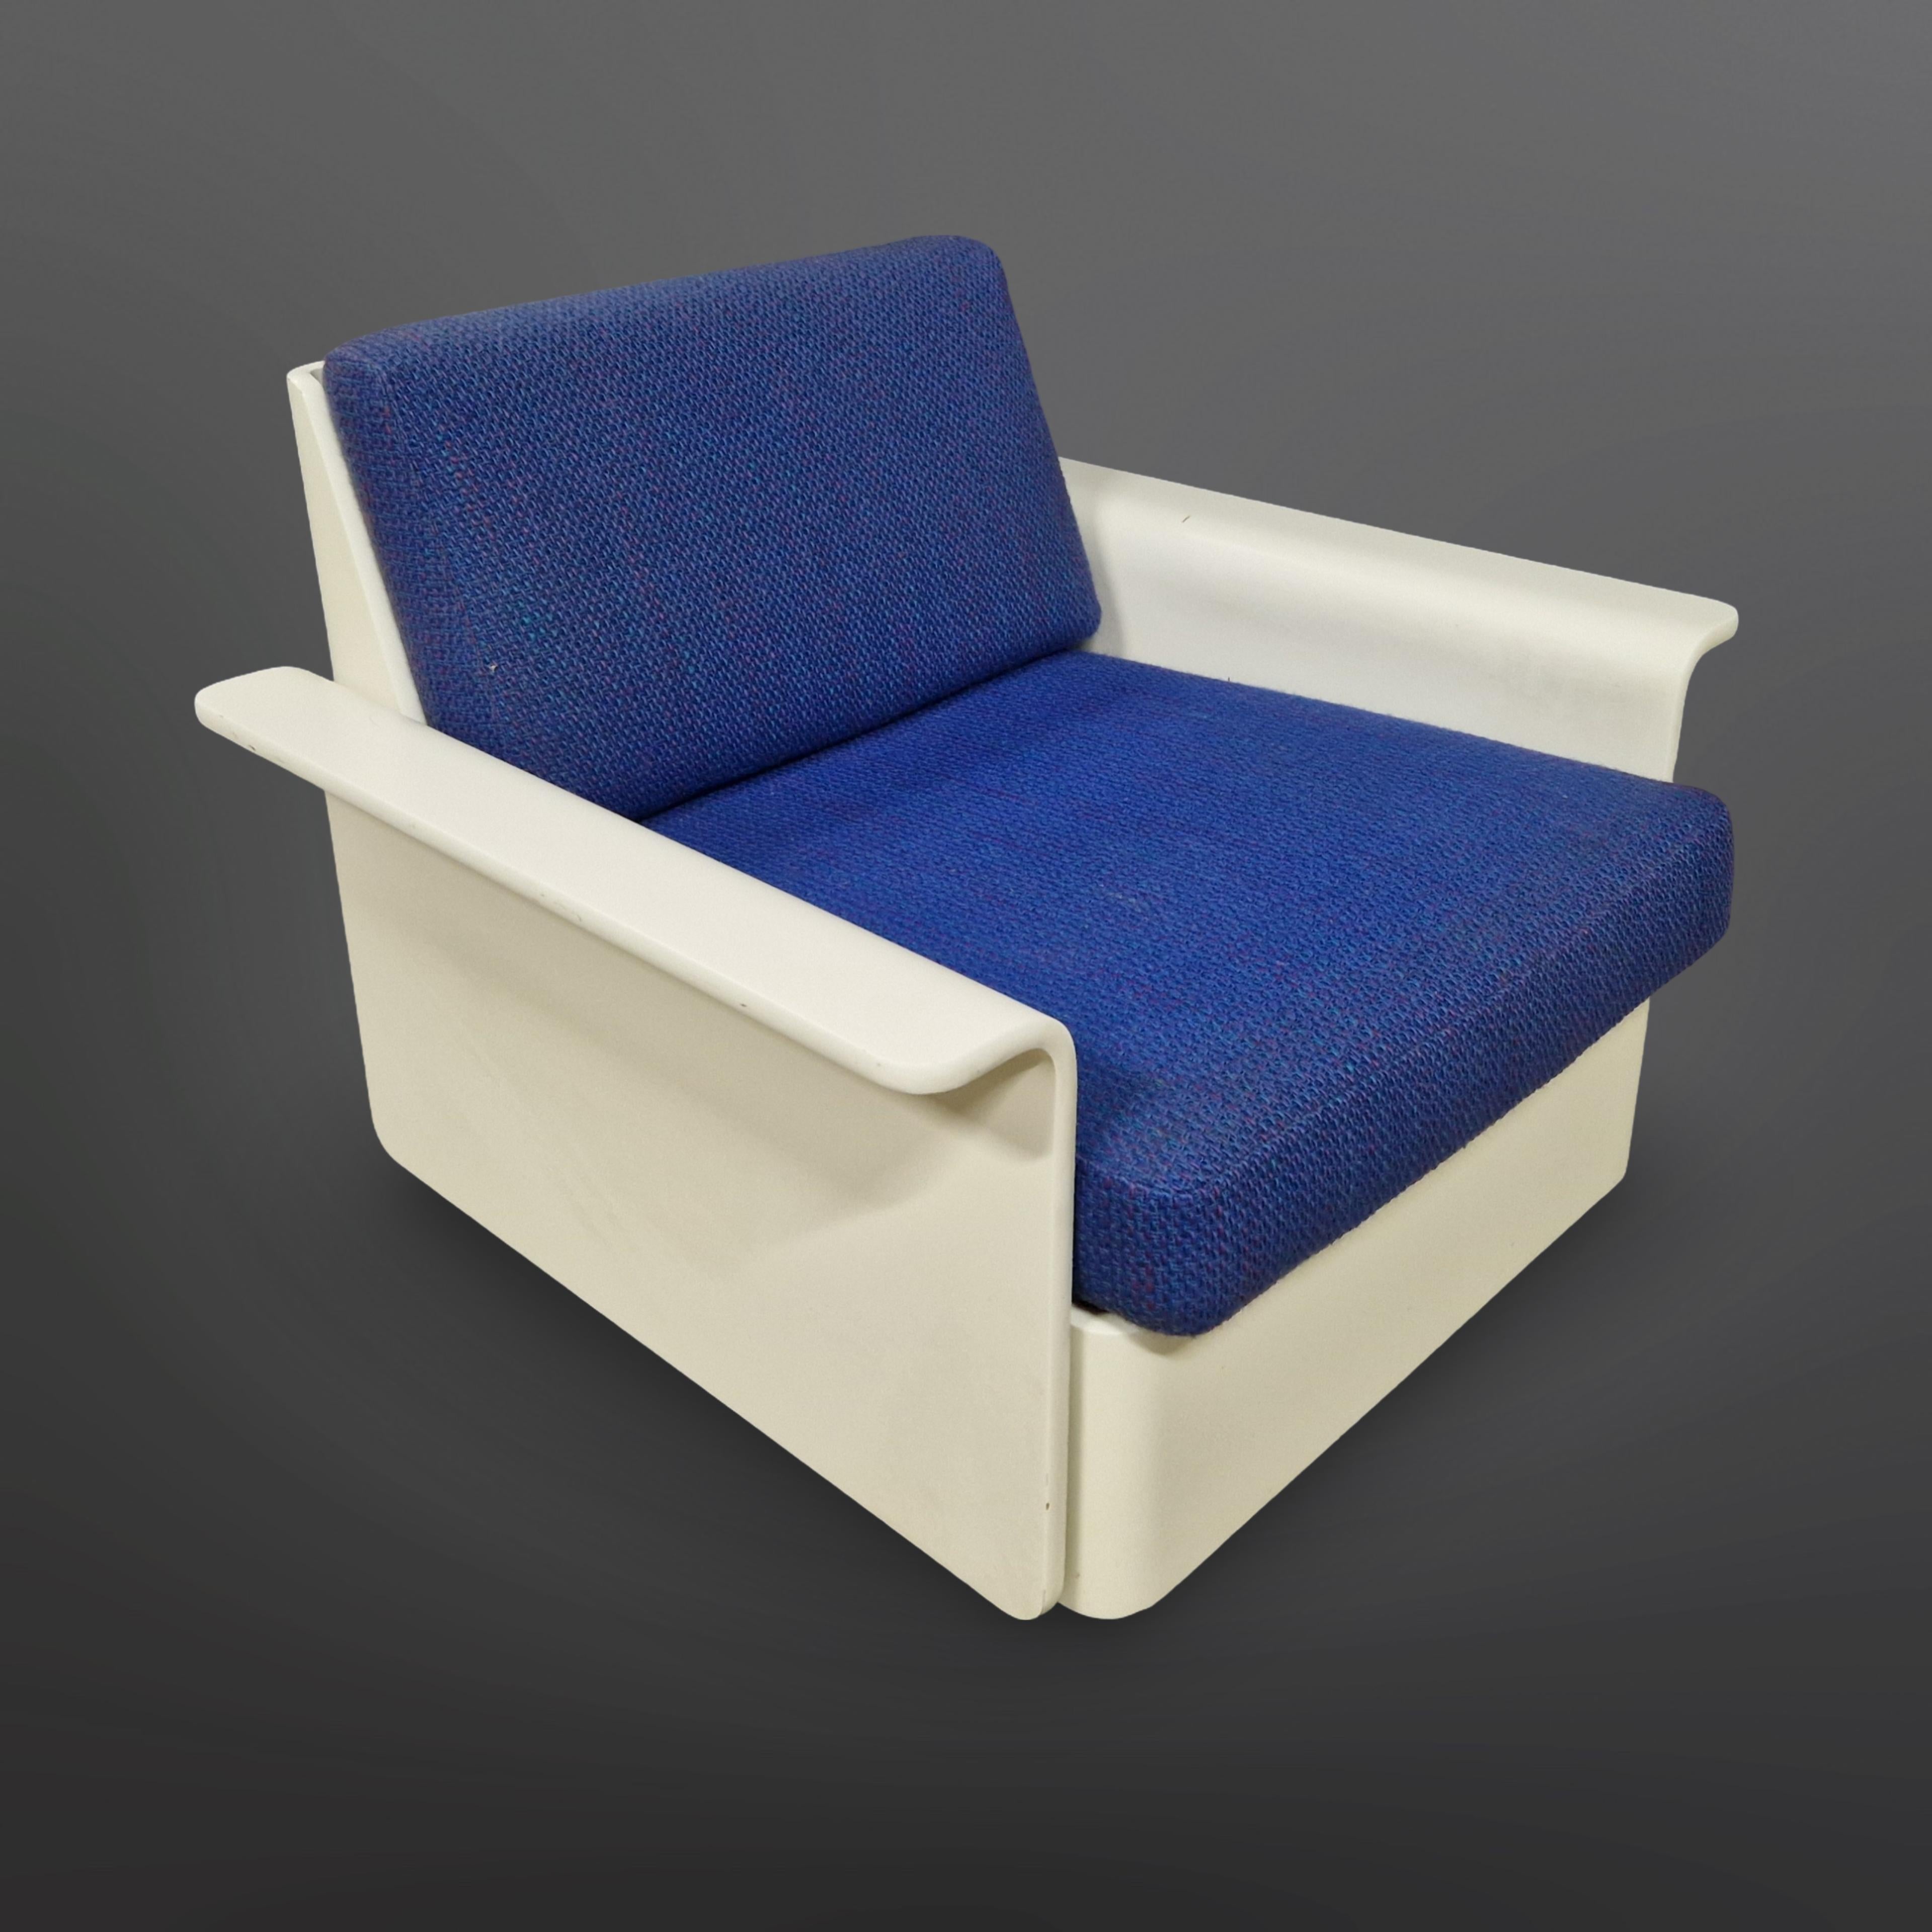 Chaise longue de l'ère spatiale avec le tissu bleu d'origine. Fabriqué et labellisé par le CORS dans les années 1960. Il s'agit probablement d'un design de Luigi Colani dans la gamme de design modulaire Orbis.
Il est fabriqué en contreplaqué cintré.